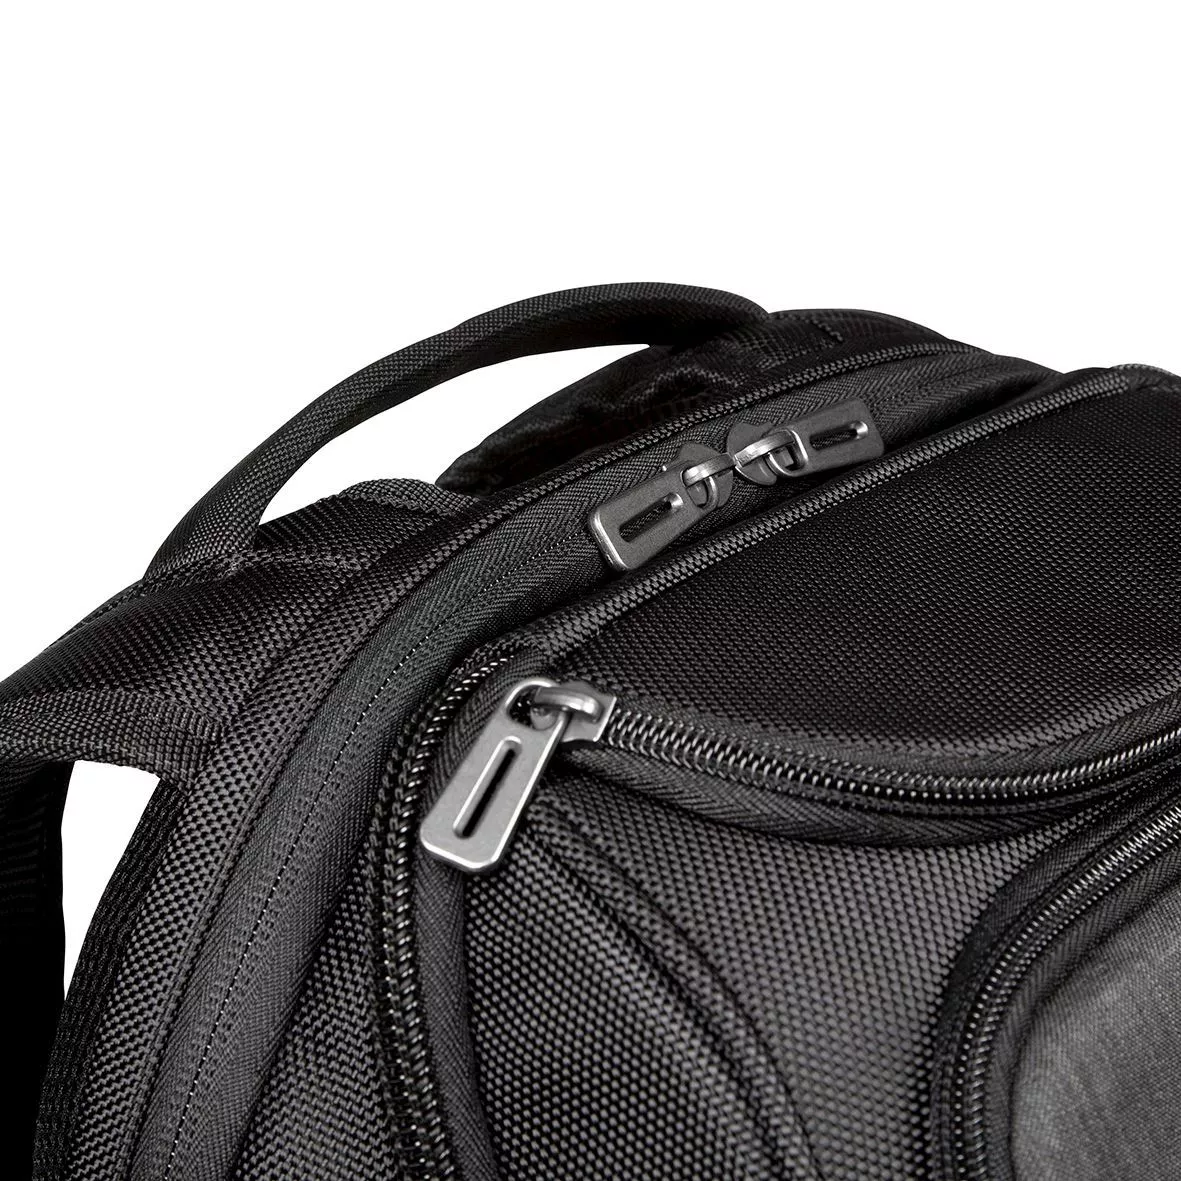 Vente TARGUS CitySmart Professional 15.6inch Laptop Backpack Targus au meilleur prix - visuel 4